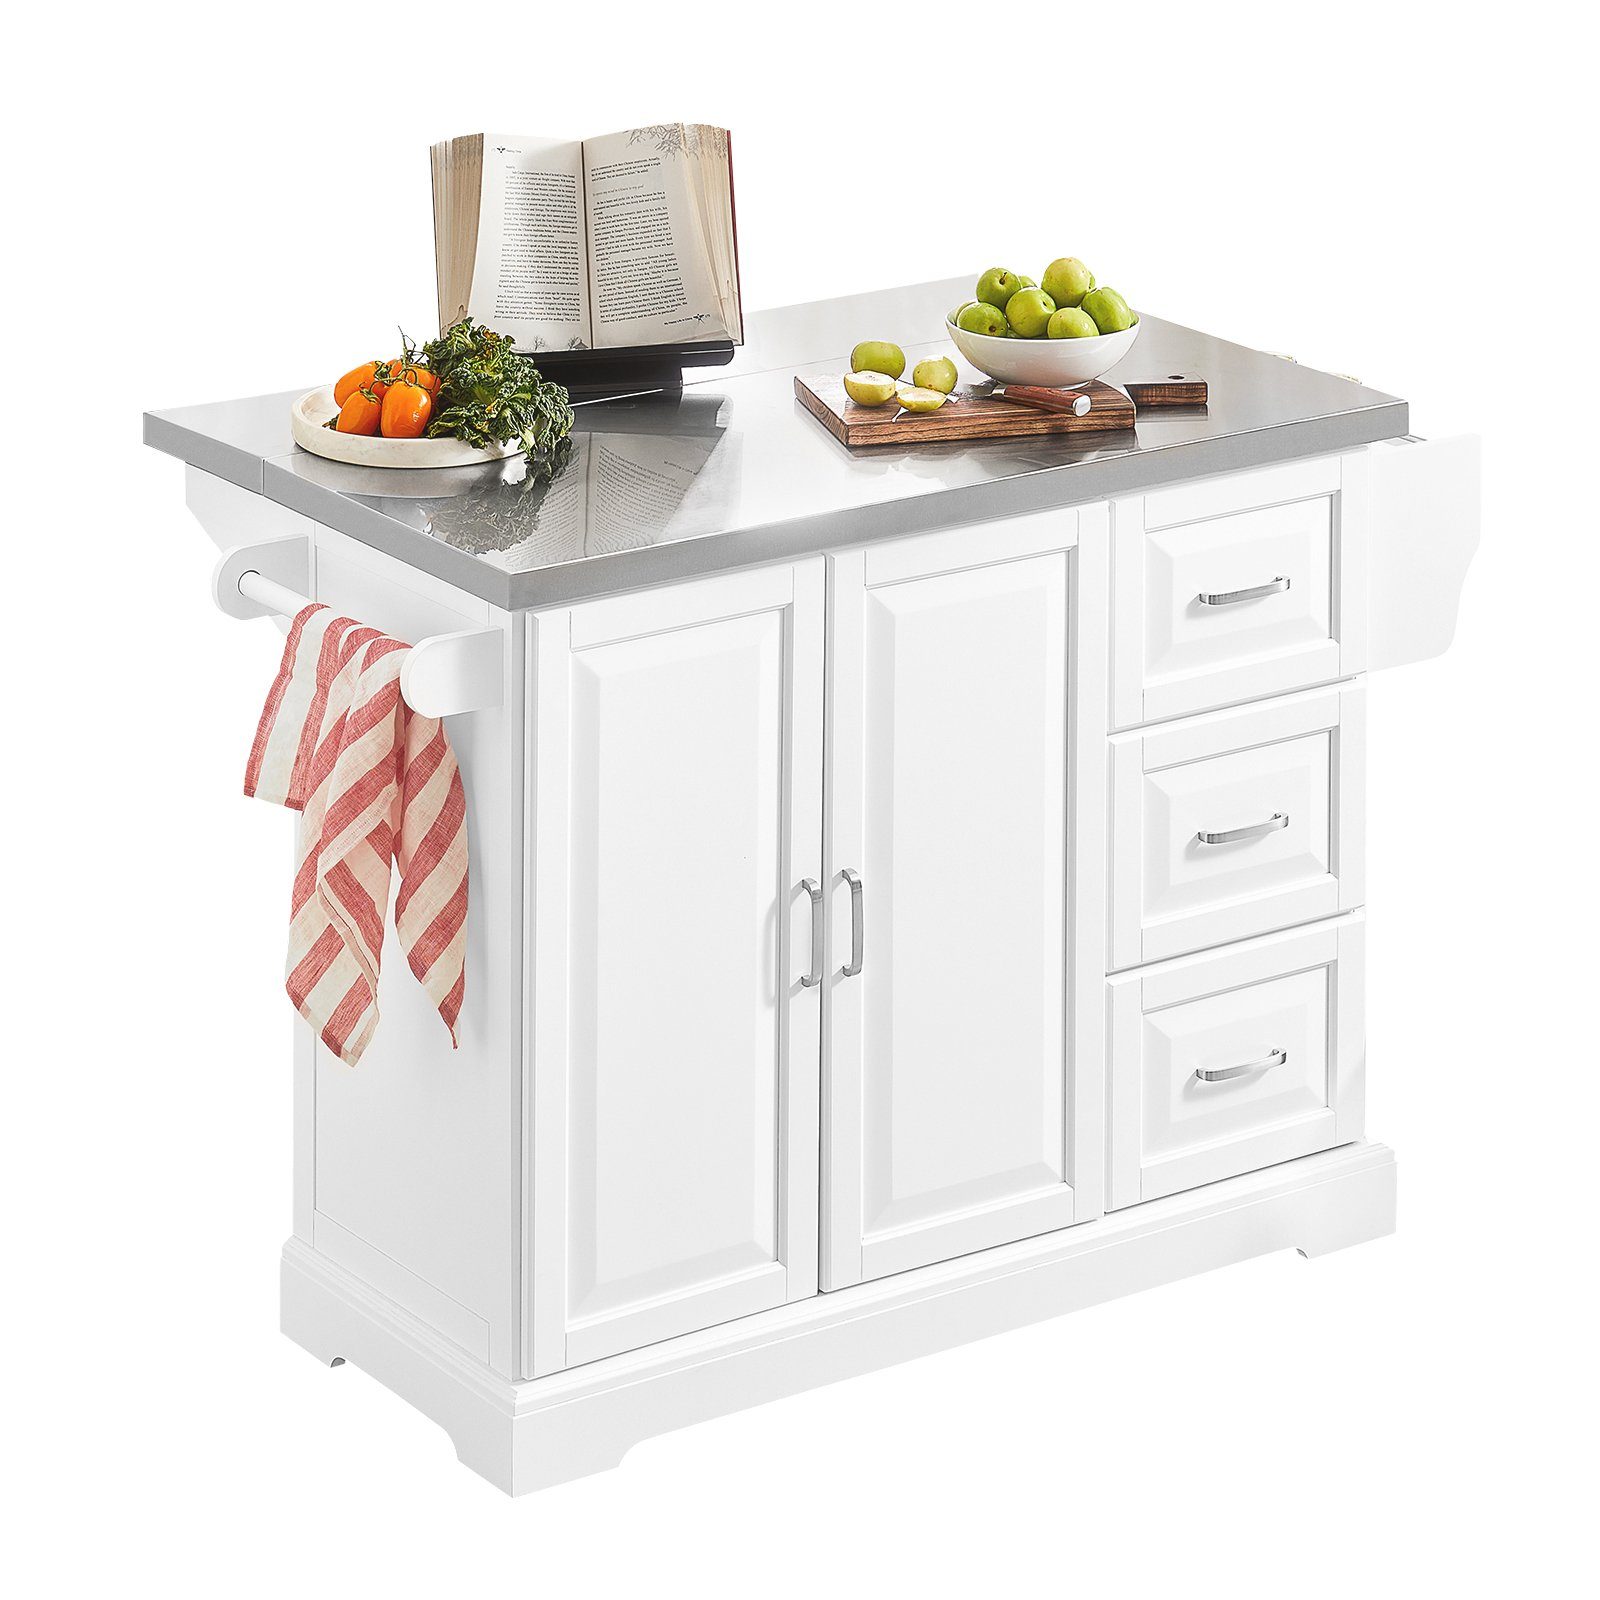 SoBuy Küchenwagen FKW41, Küchenschrank Sideboard Kücheninsel mit erweiterbarer Arbeitsfläche weiß-grau